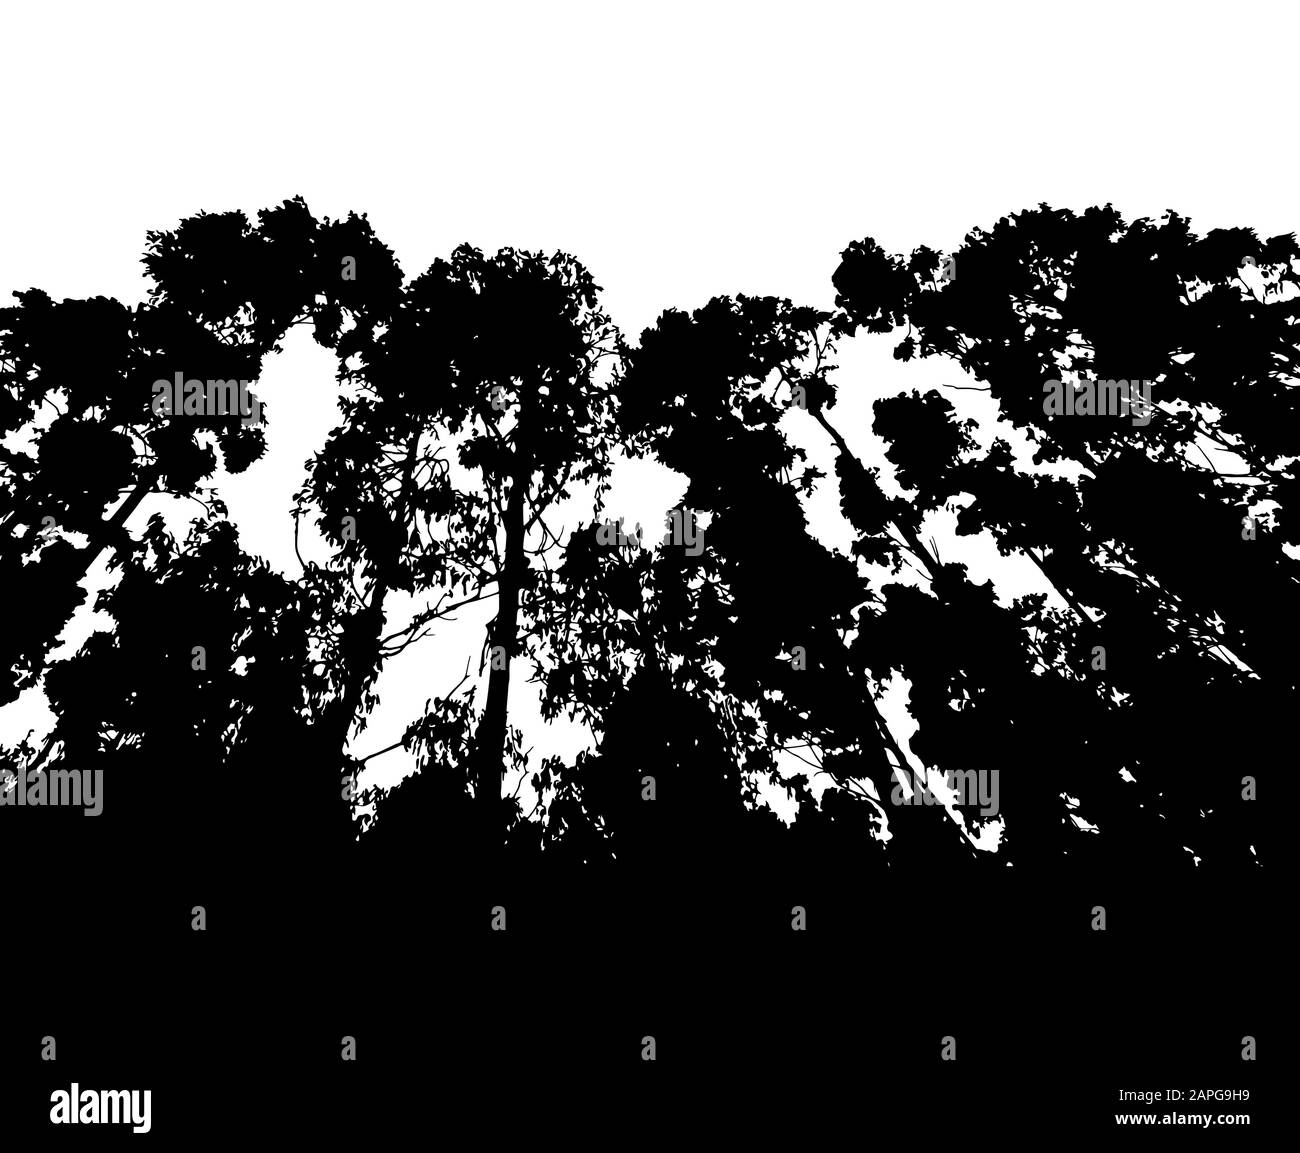 Wald-Silhouette isoliert auf weißem Hintergrundvektor Stock Vektor